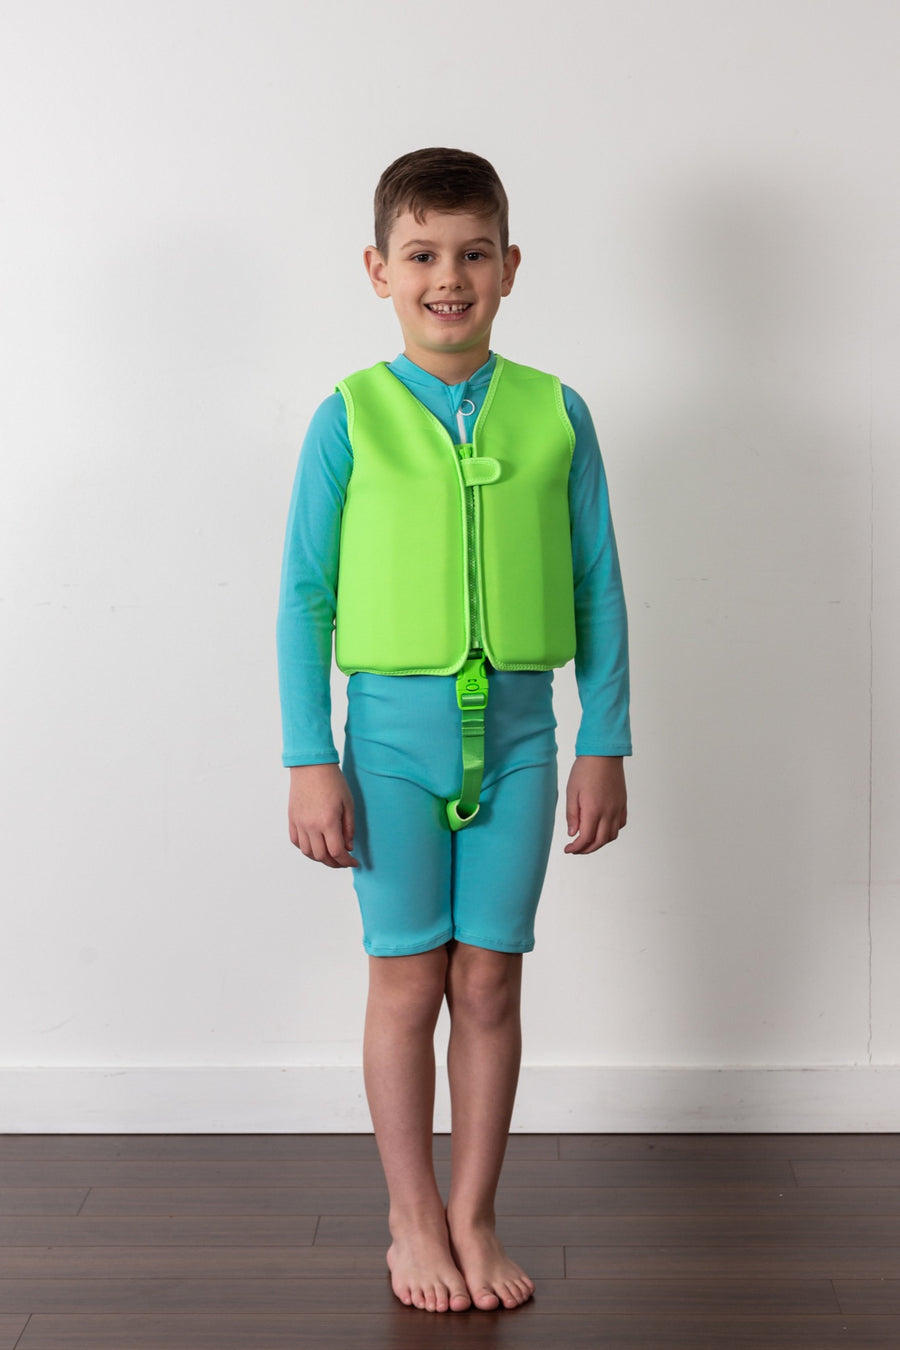 bright blue sunsuit for kids, swim vest